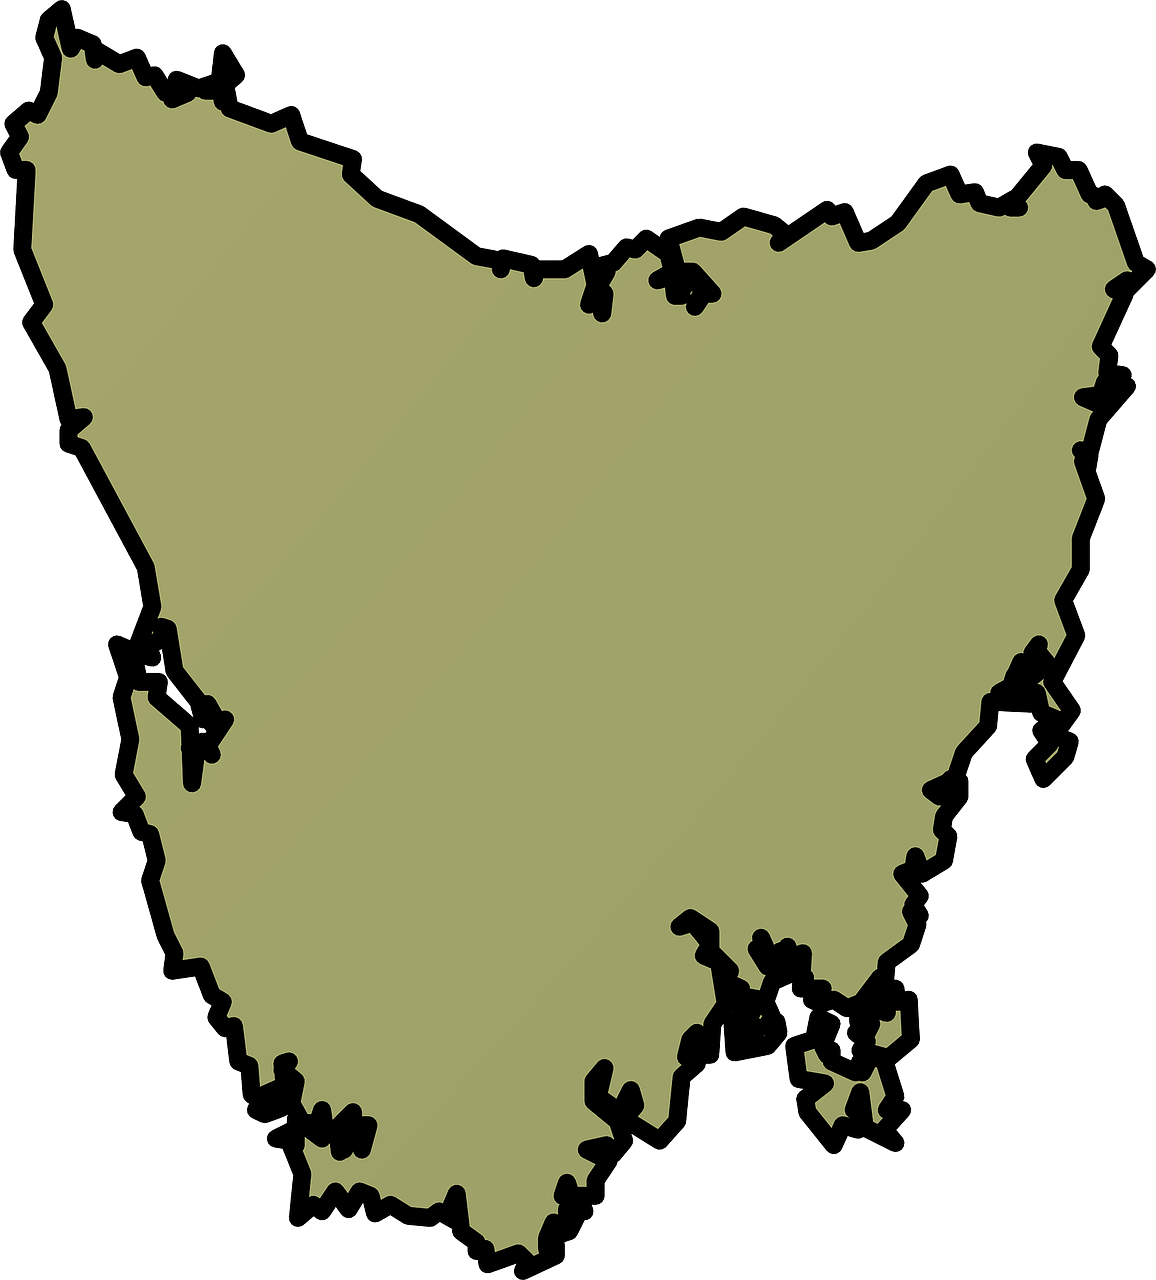 tasmania map australia free photo